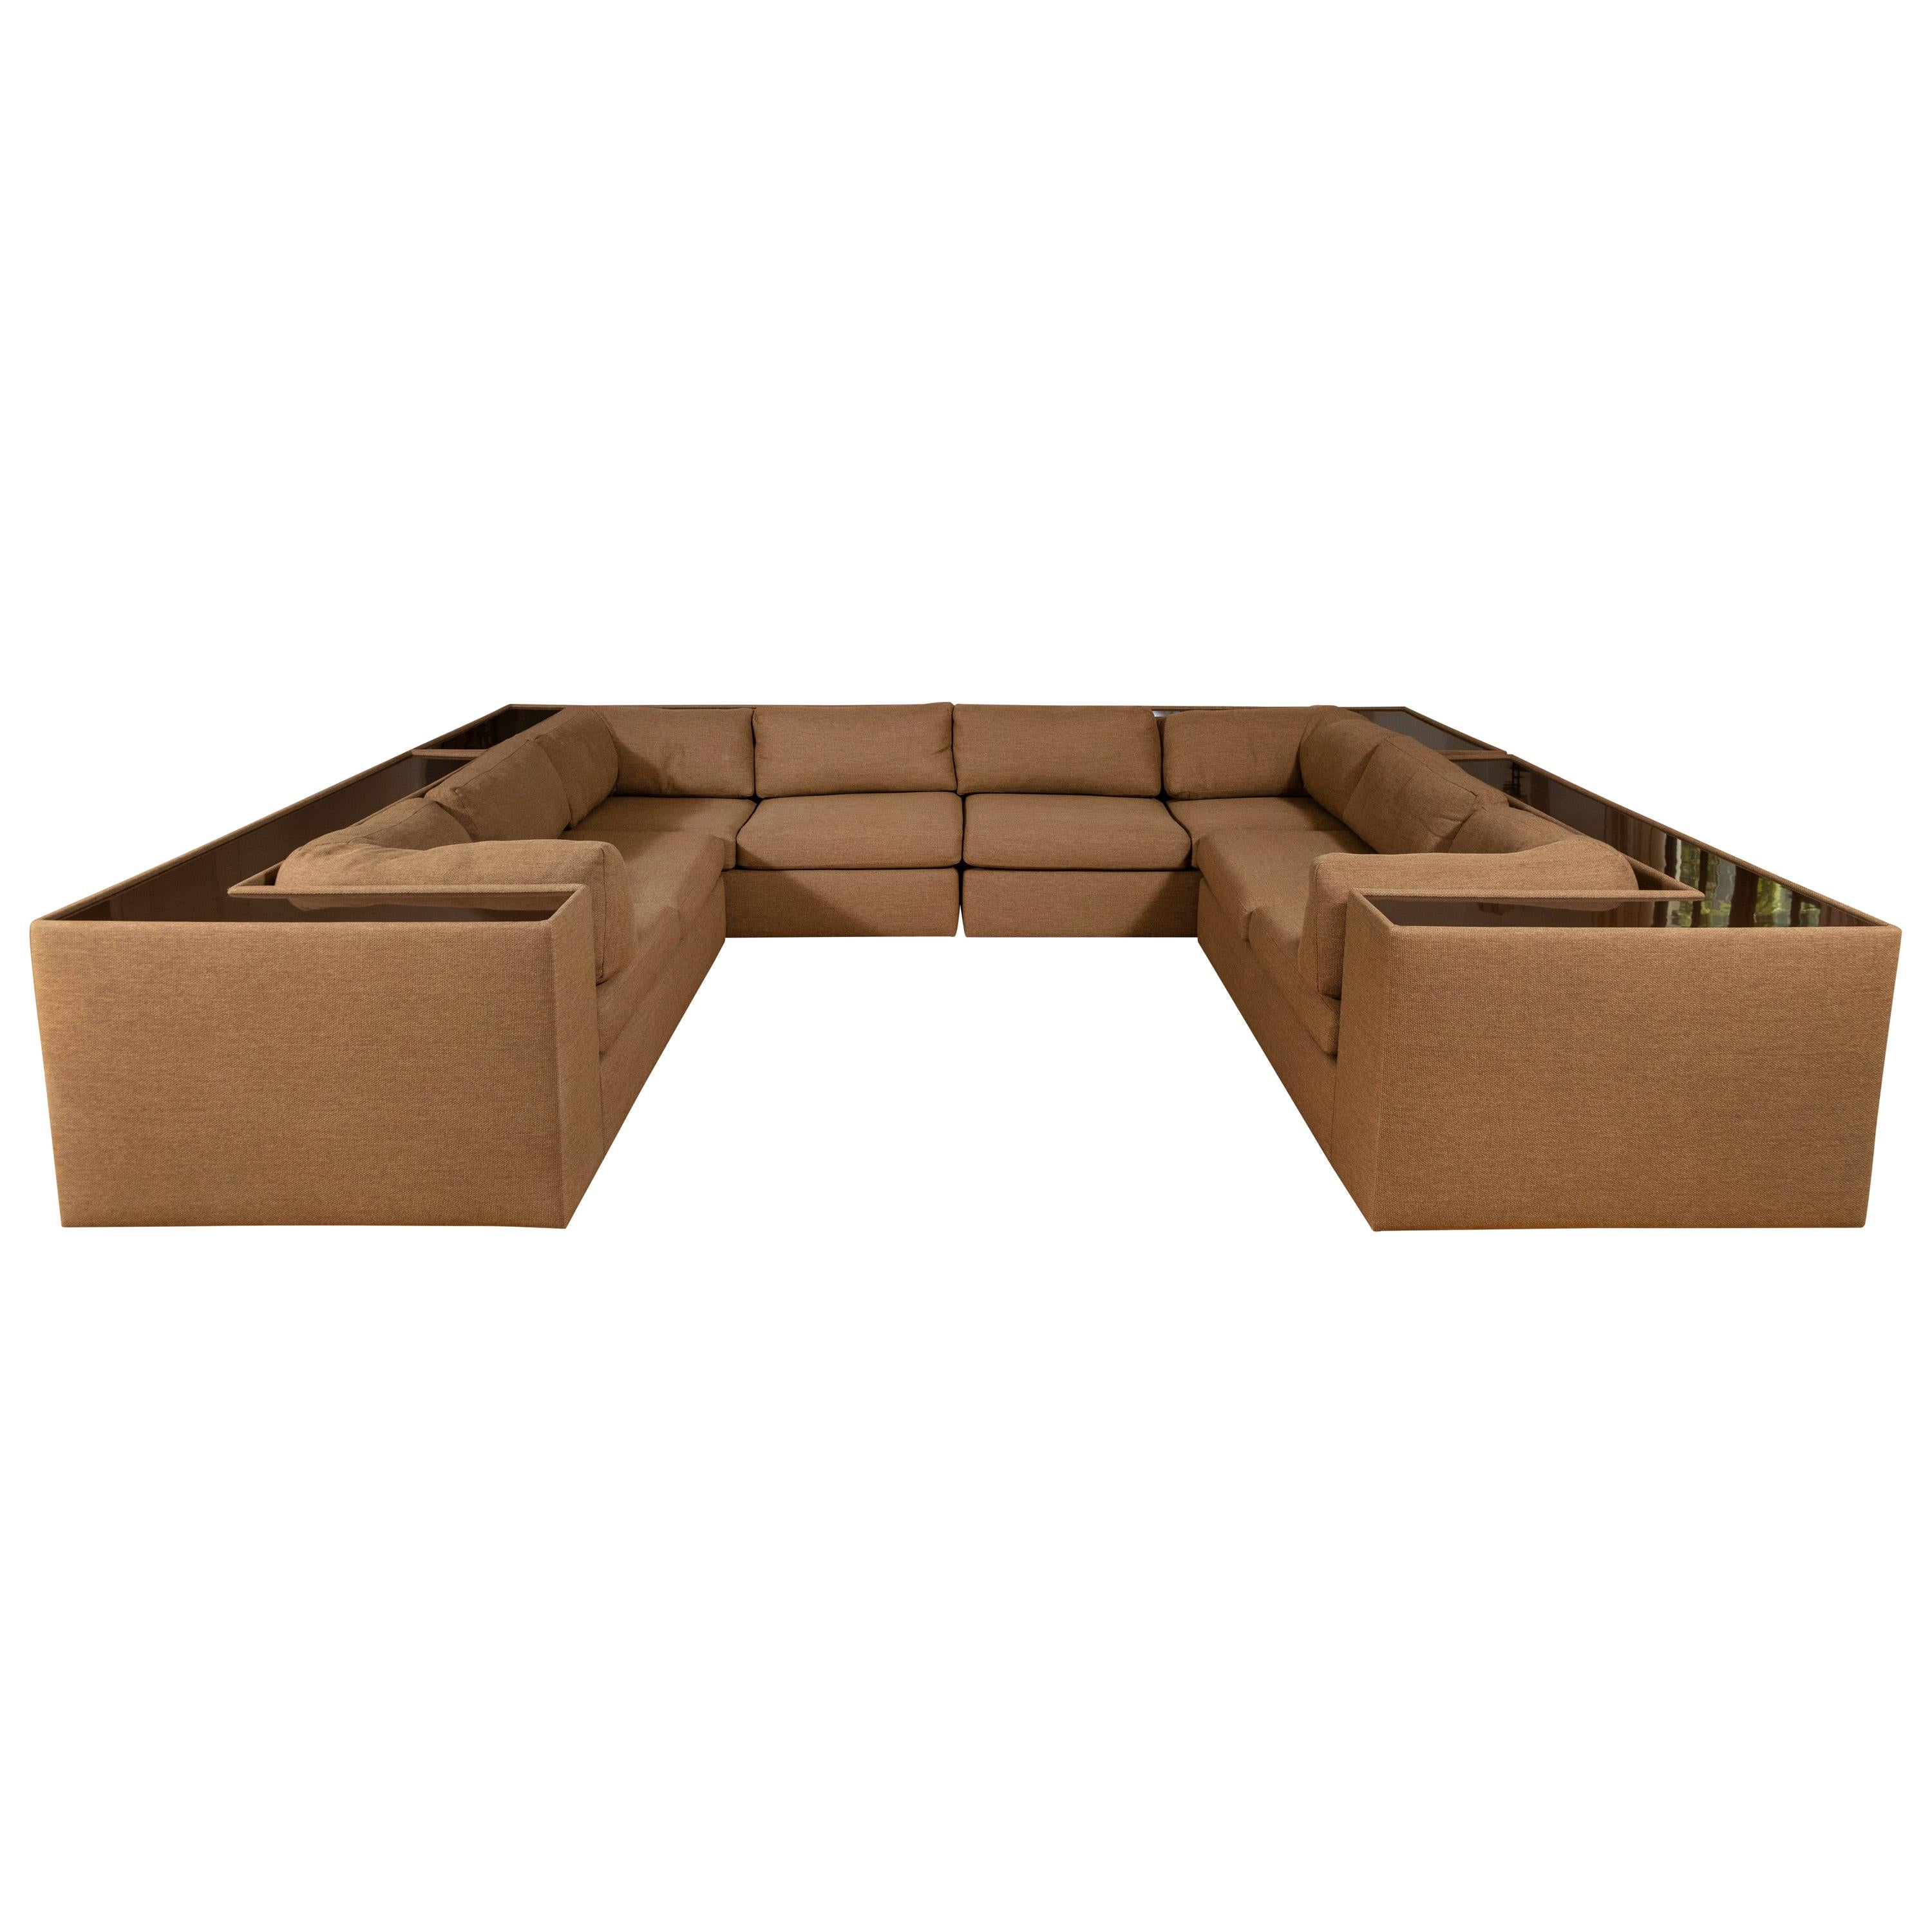 Four-Piece Milo Baughman Sectional Sofa with Original Polymer Shelf Back